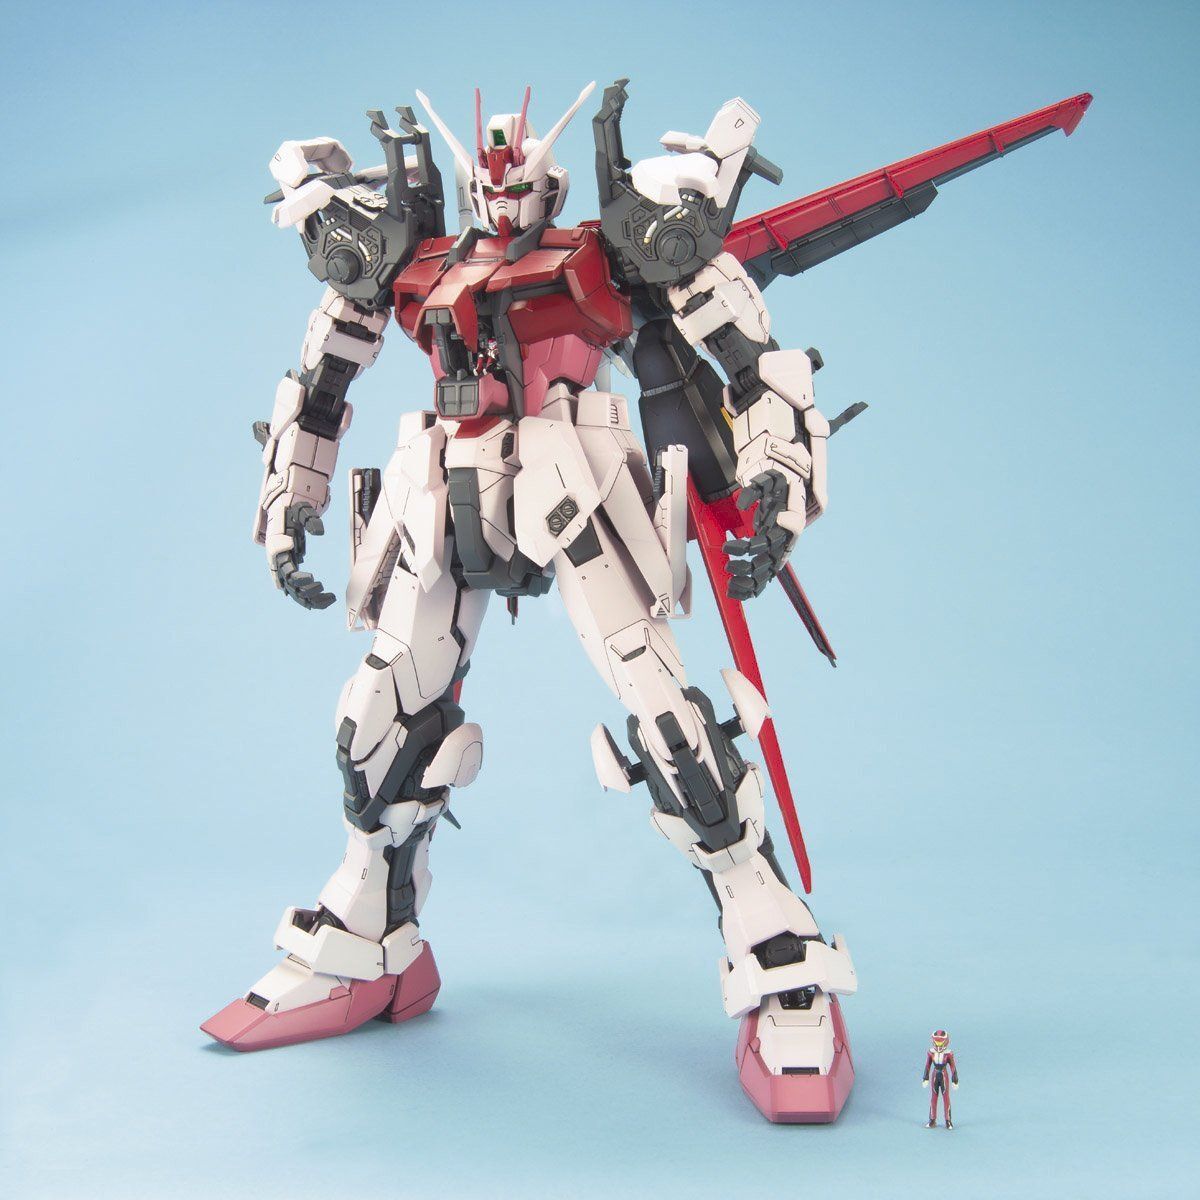 MBF-02 Strike Rouge + FX-550 Skygrasper Mobile Suit Gundam Seed Destiny PG 160 Scale Model Kit (1)